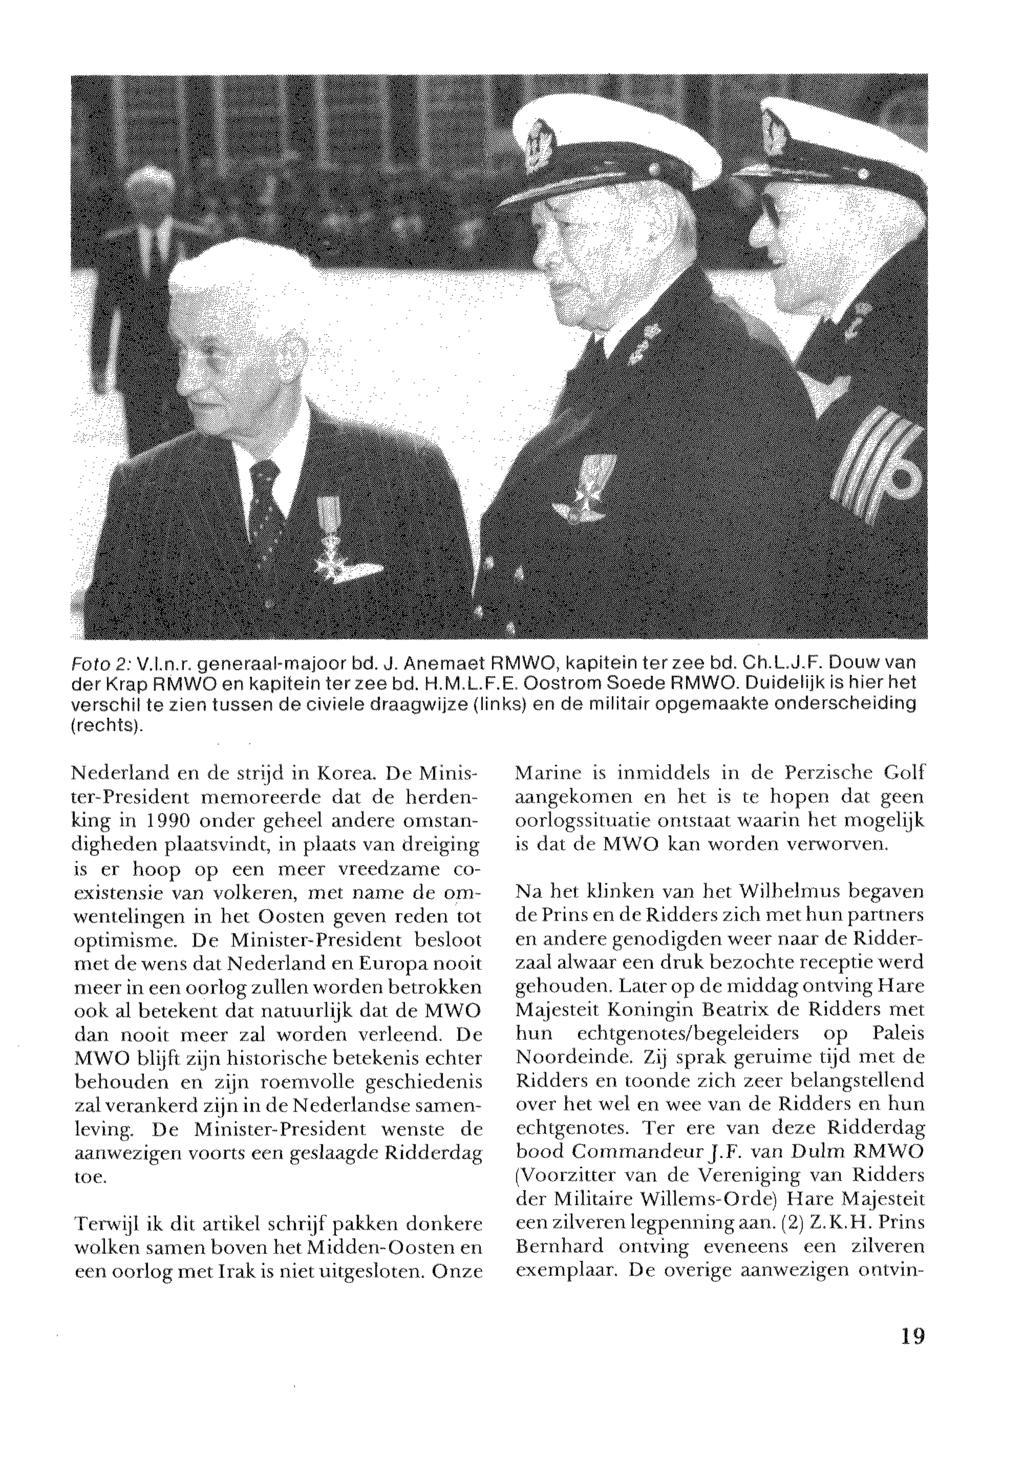 Foto 2: V.l.n.r, generaal-majoor bd. J. Anemaet RMWO, kapitein ter zee bd. Ch.LJ.F. Douw van der Krap RMWO en kapitein ter zee bd. H.M.L.F.E. Oostrom Soede RMWO.